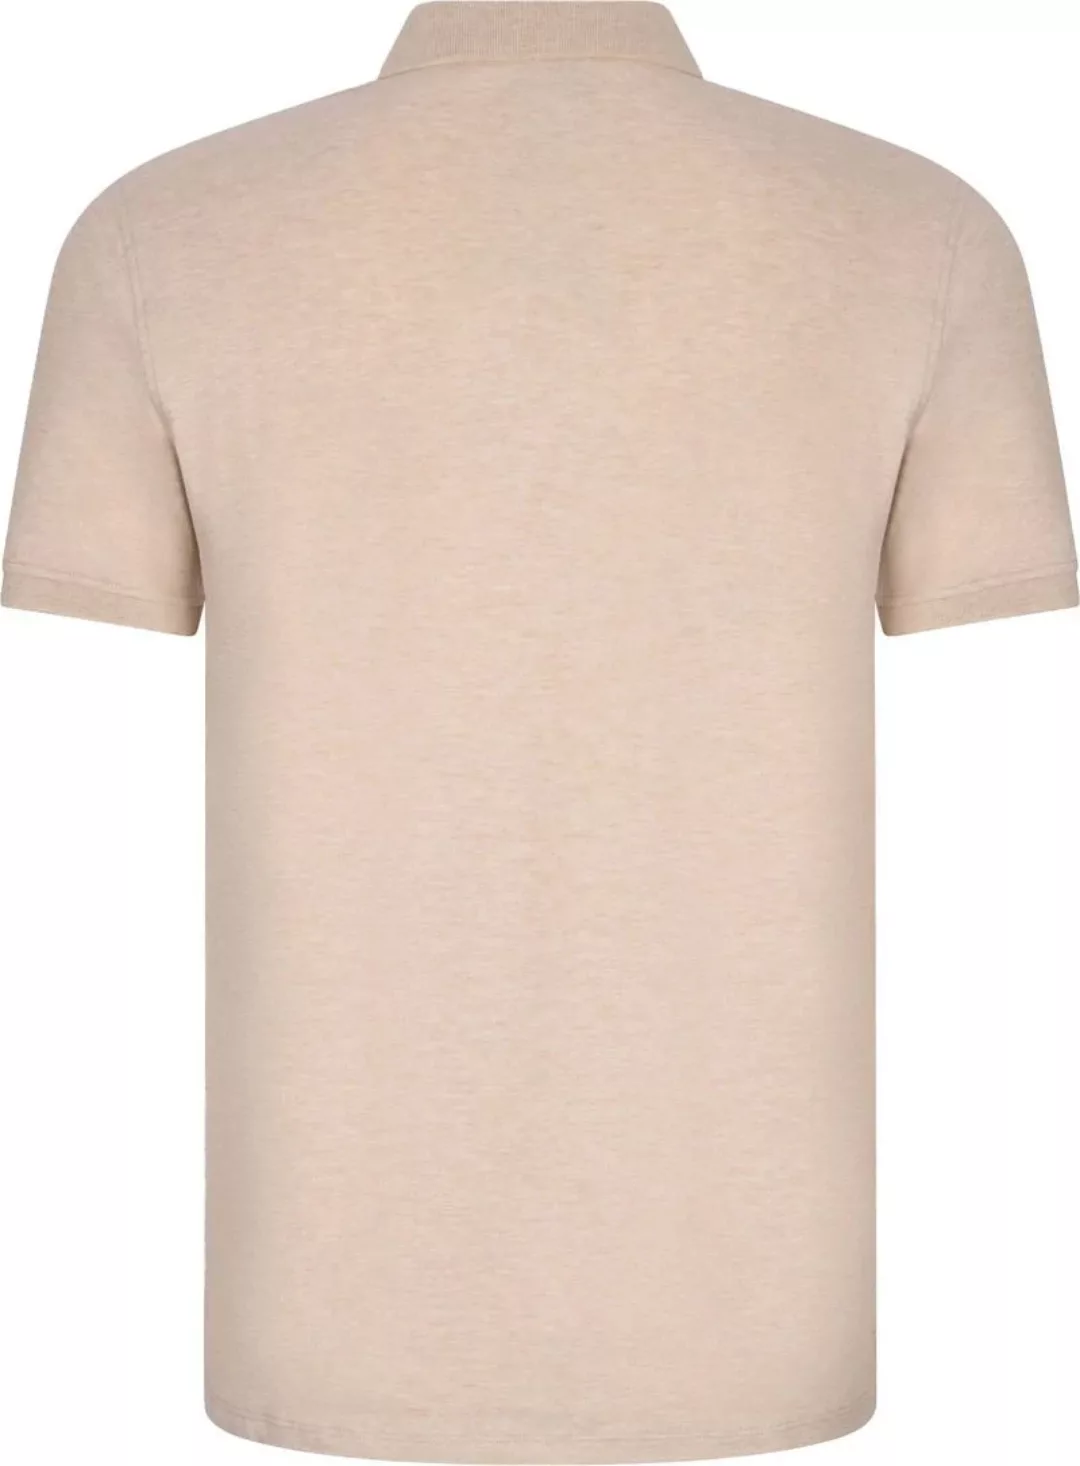 Cavallaro Bavegio Poloshirt Melange Beige - Größe XL günstig online kaufen